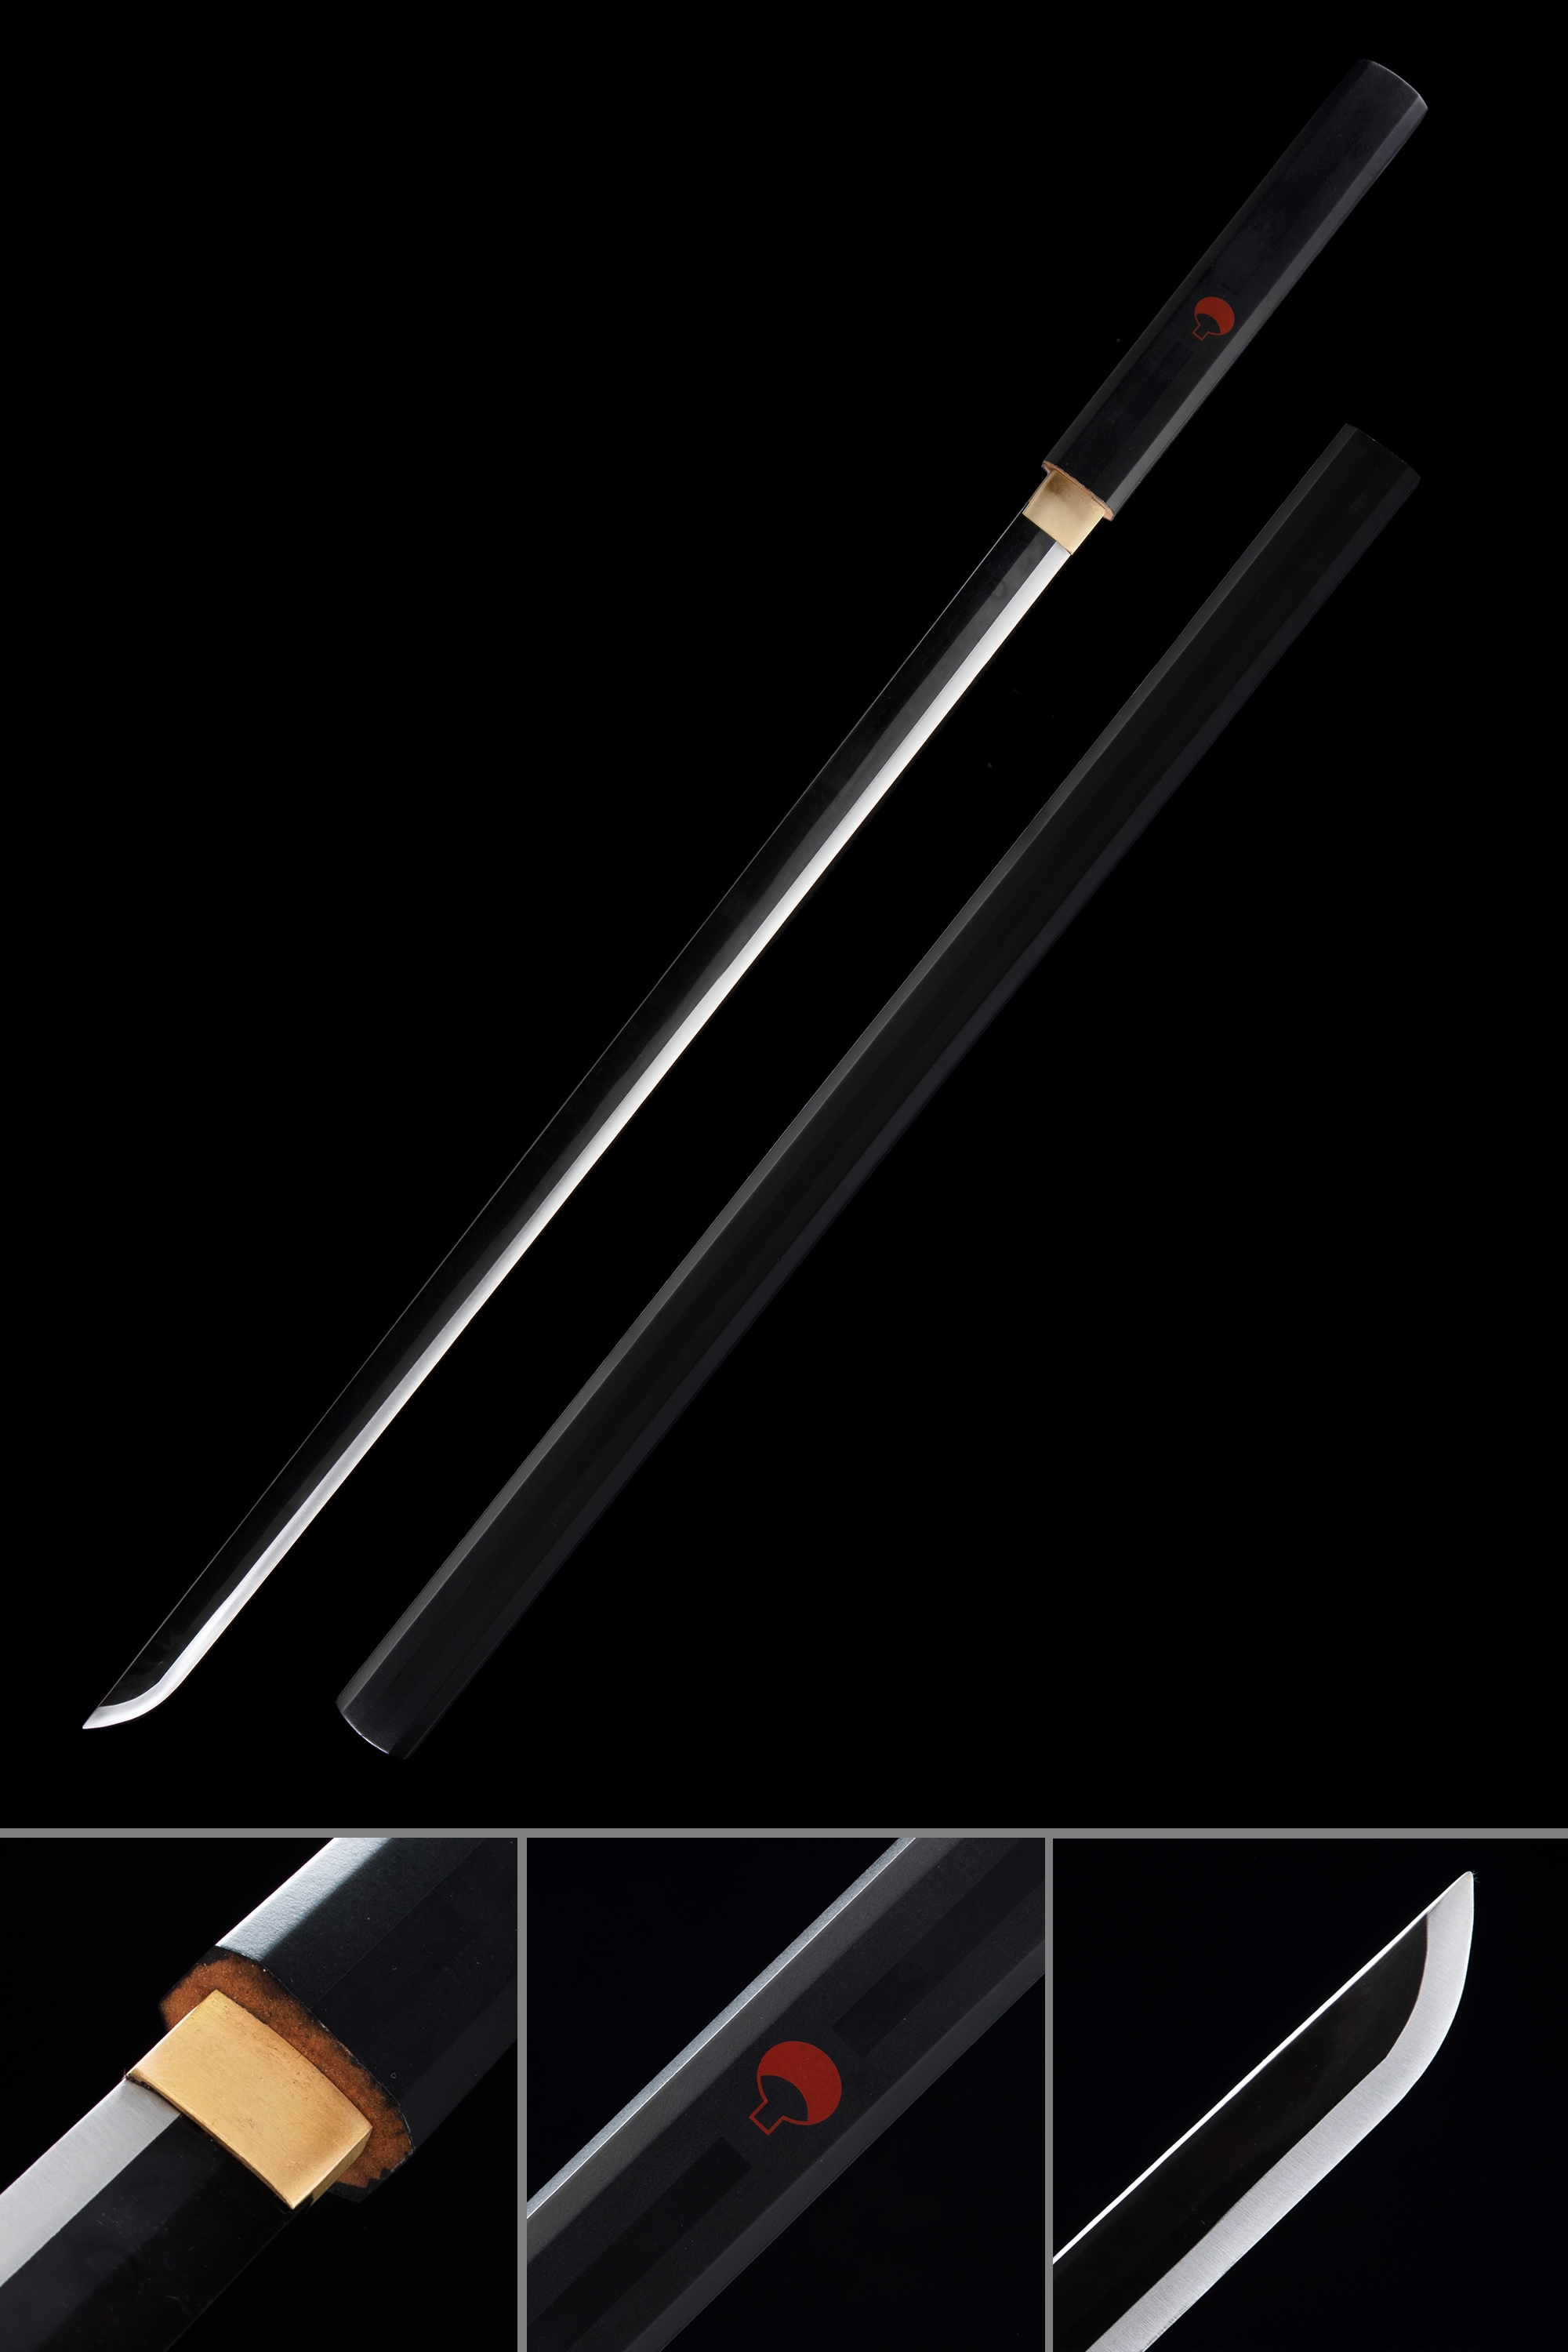 Sasuke Sword for Sale - TrueKatana